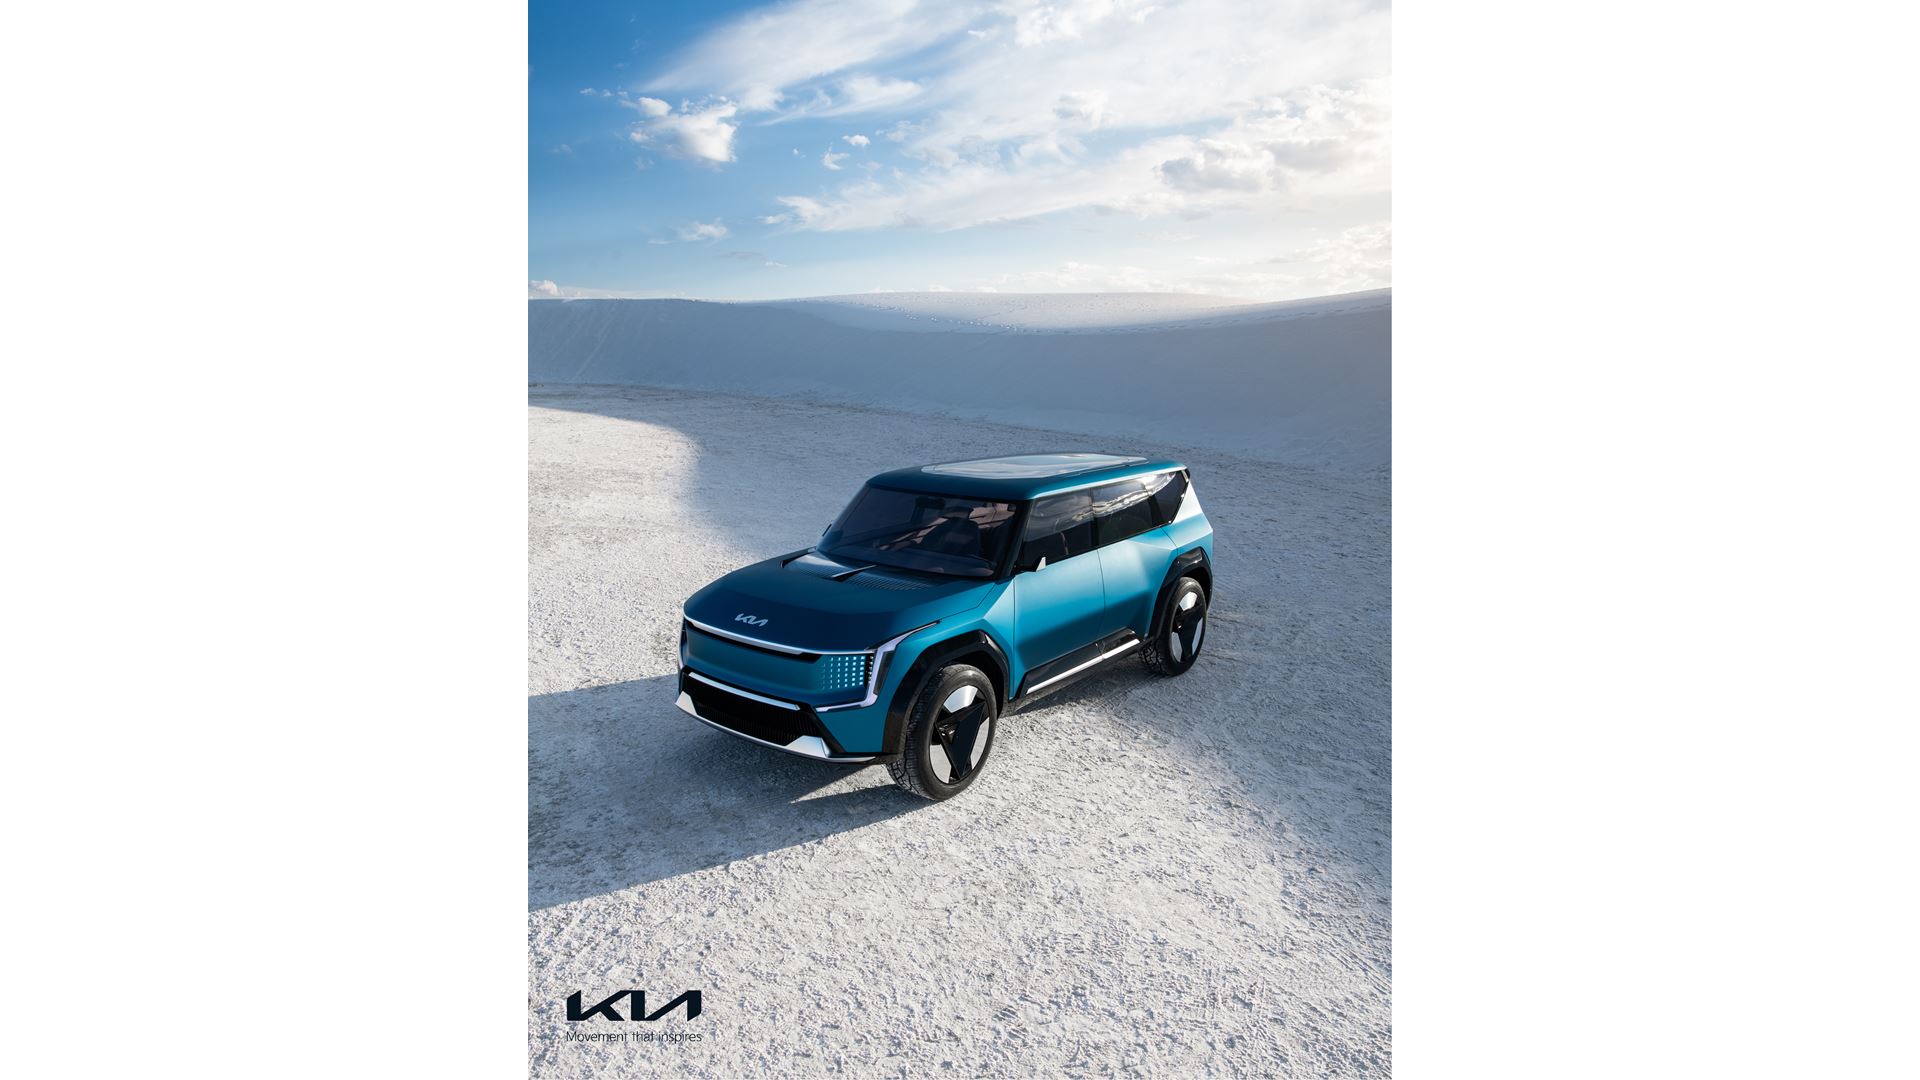 The Kia Concept EV9 – Kia’s All-electric SUV Concept takes Center Stage at AutoMobility LA - Image 4